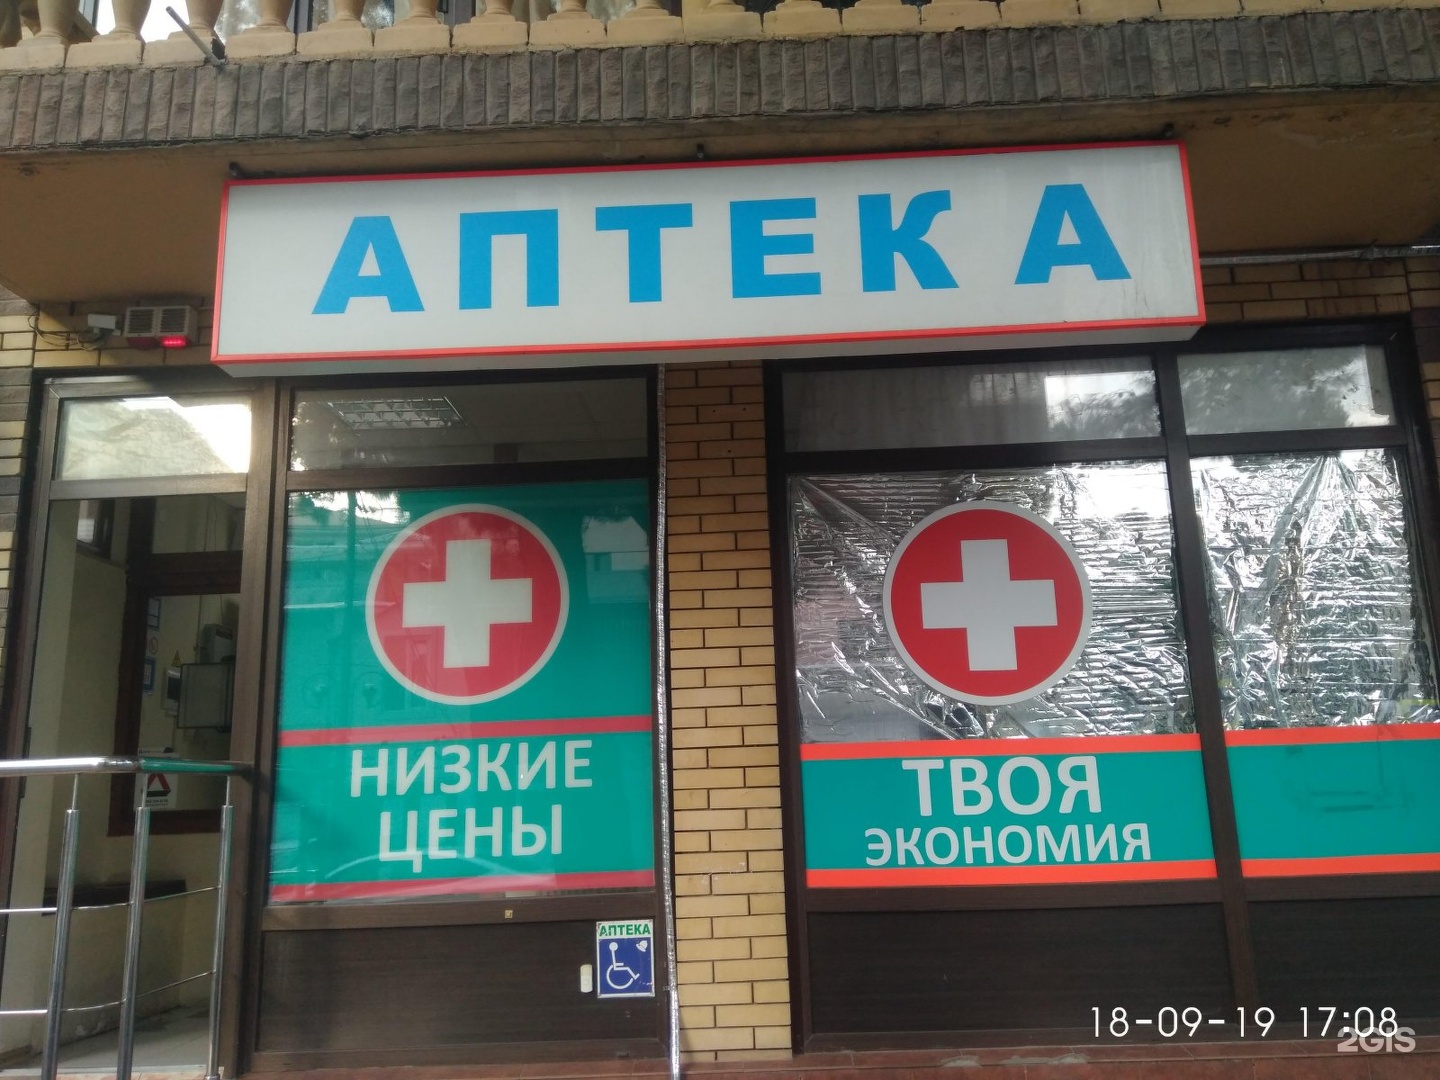 Сайт аптек анапы. Аптека твоя экономия. Круглосуточная аптека Анапа. Анапа социальная аптека на Крымской. Аптека твоя экономия фото.